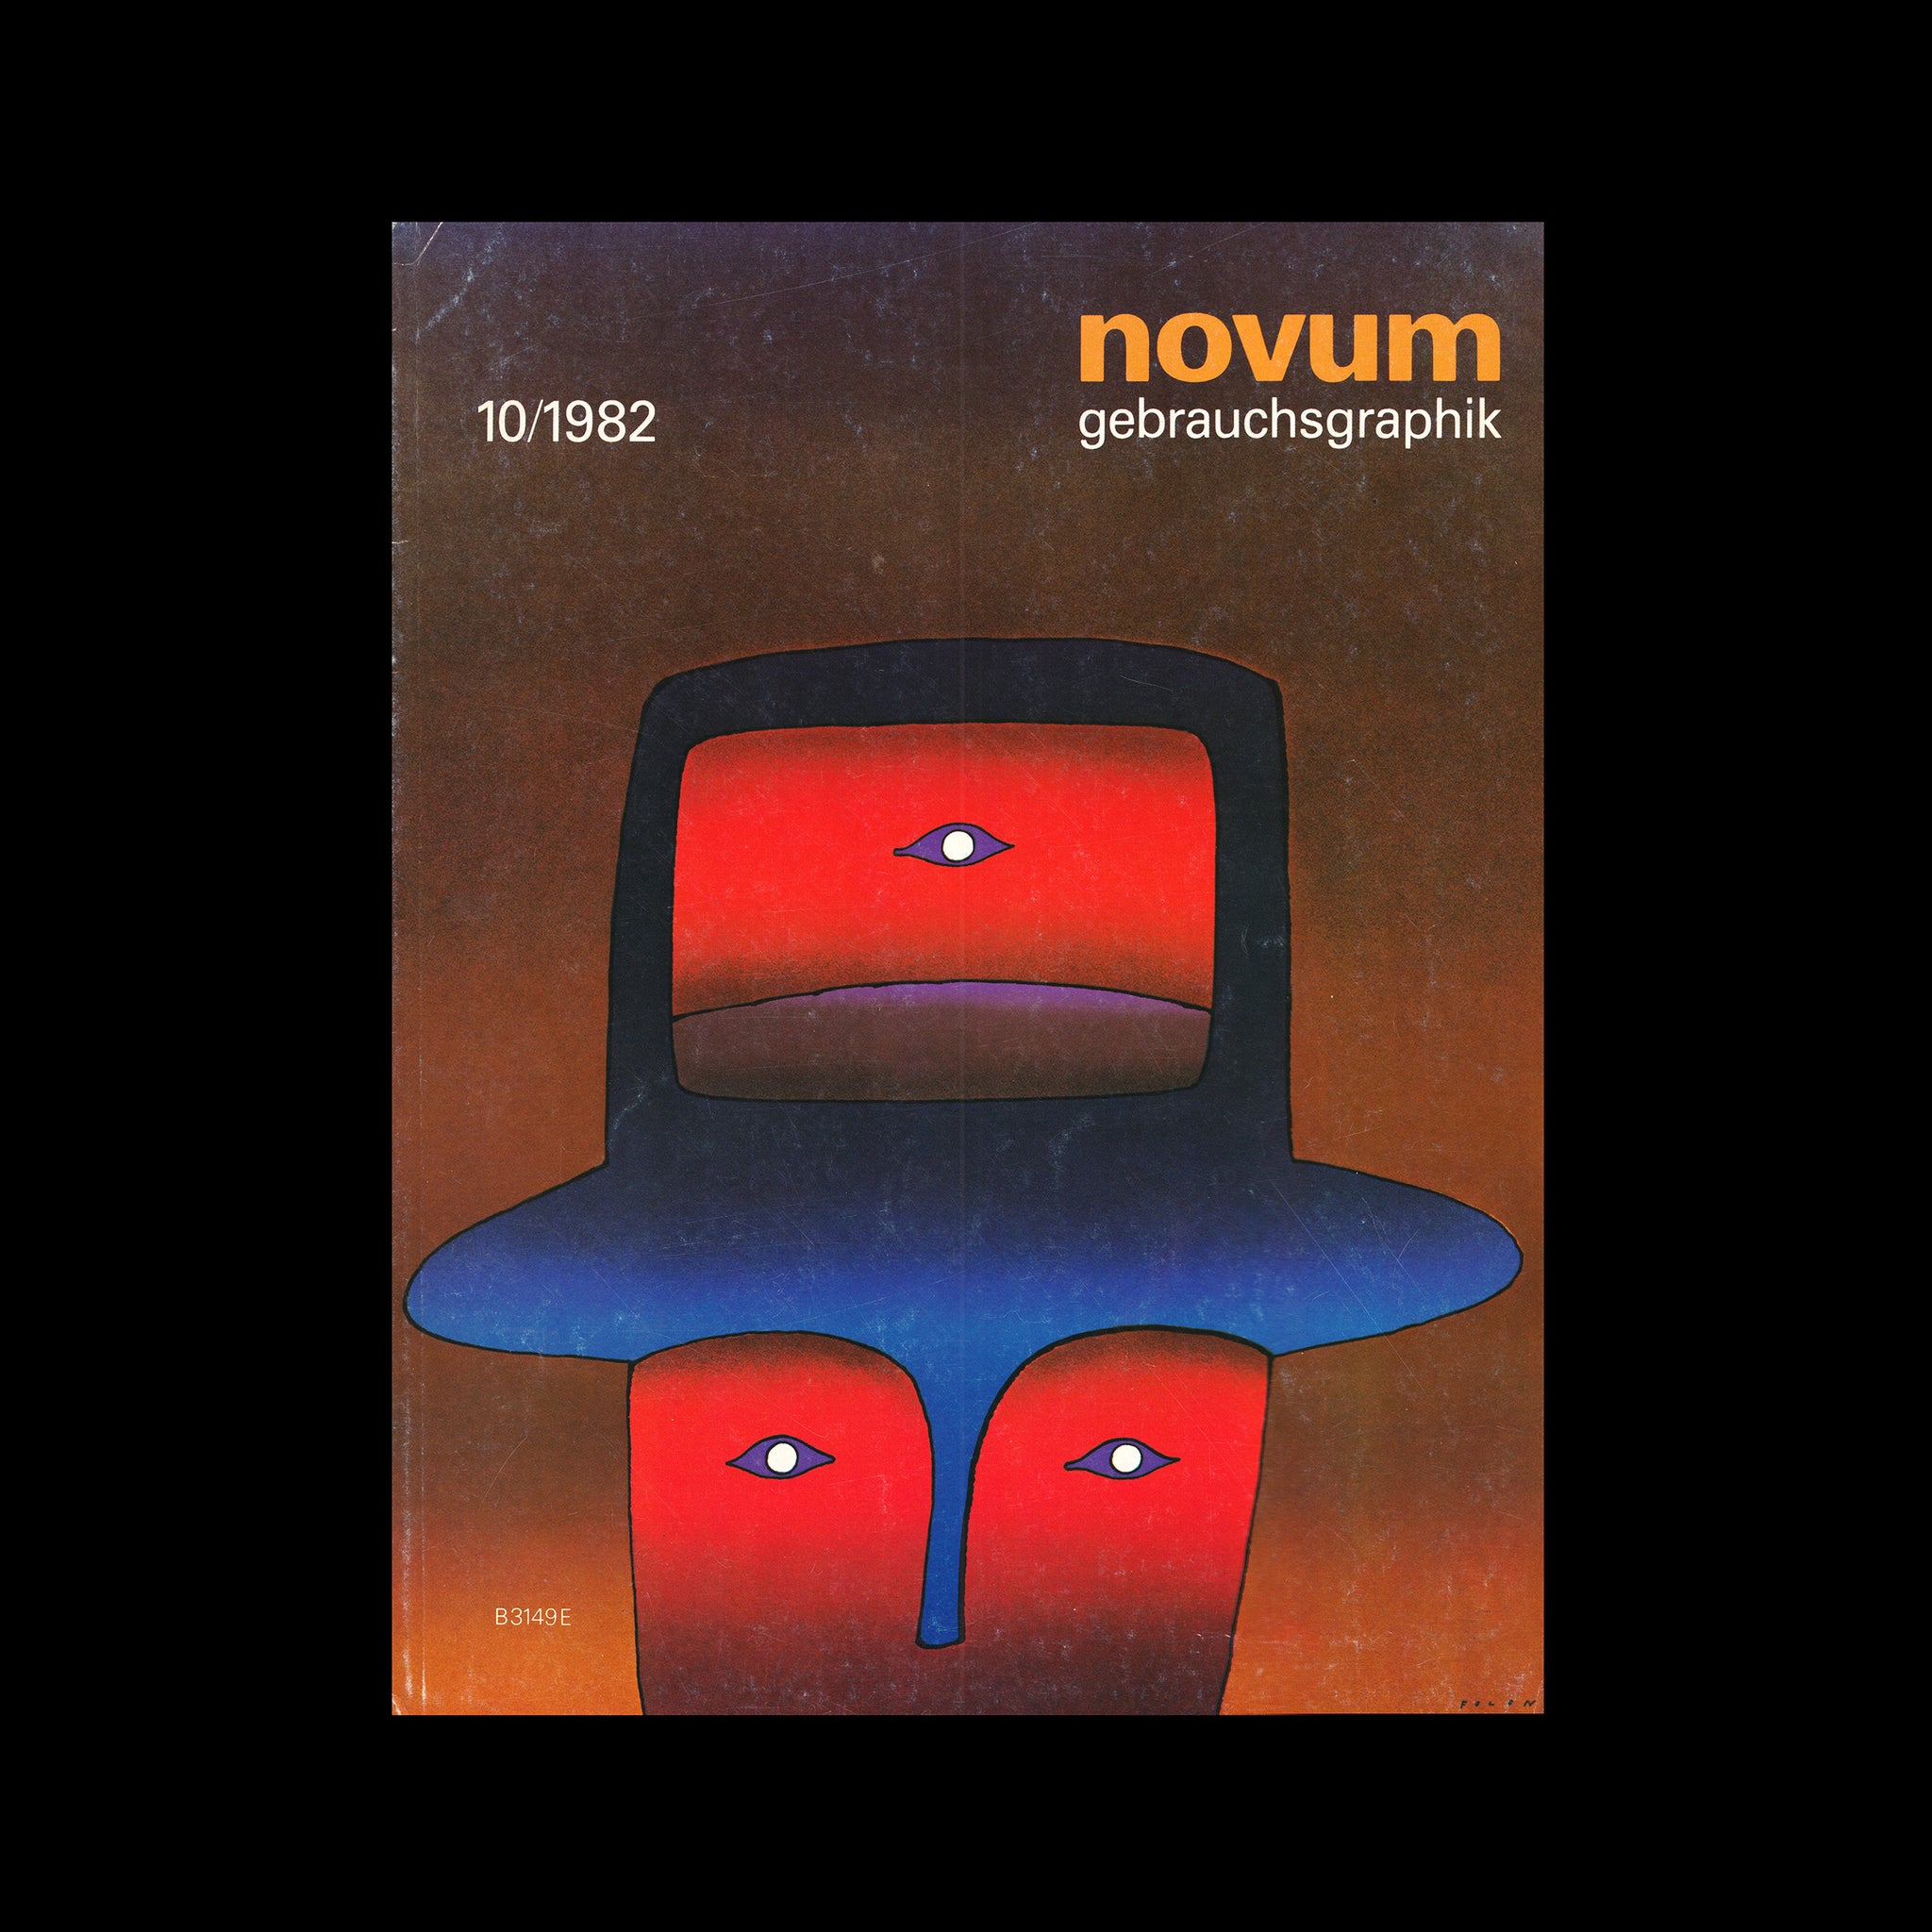 Novum Gebrauchsgraphik, October 1982